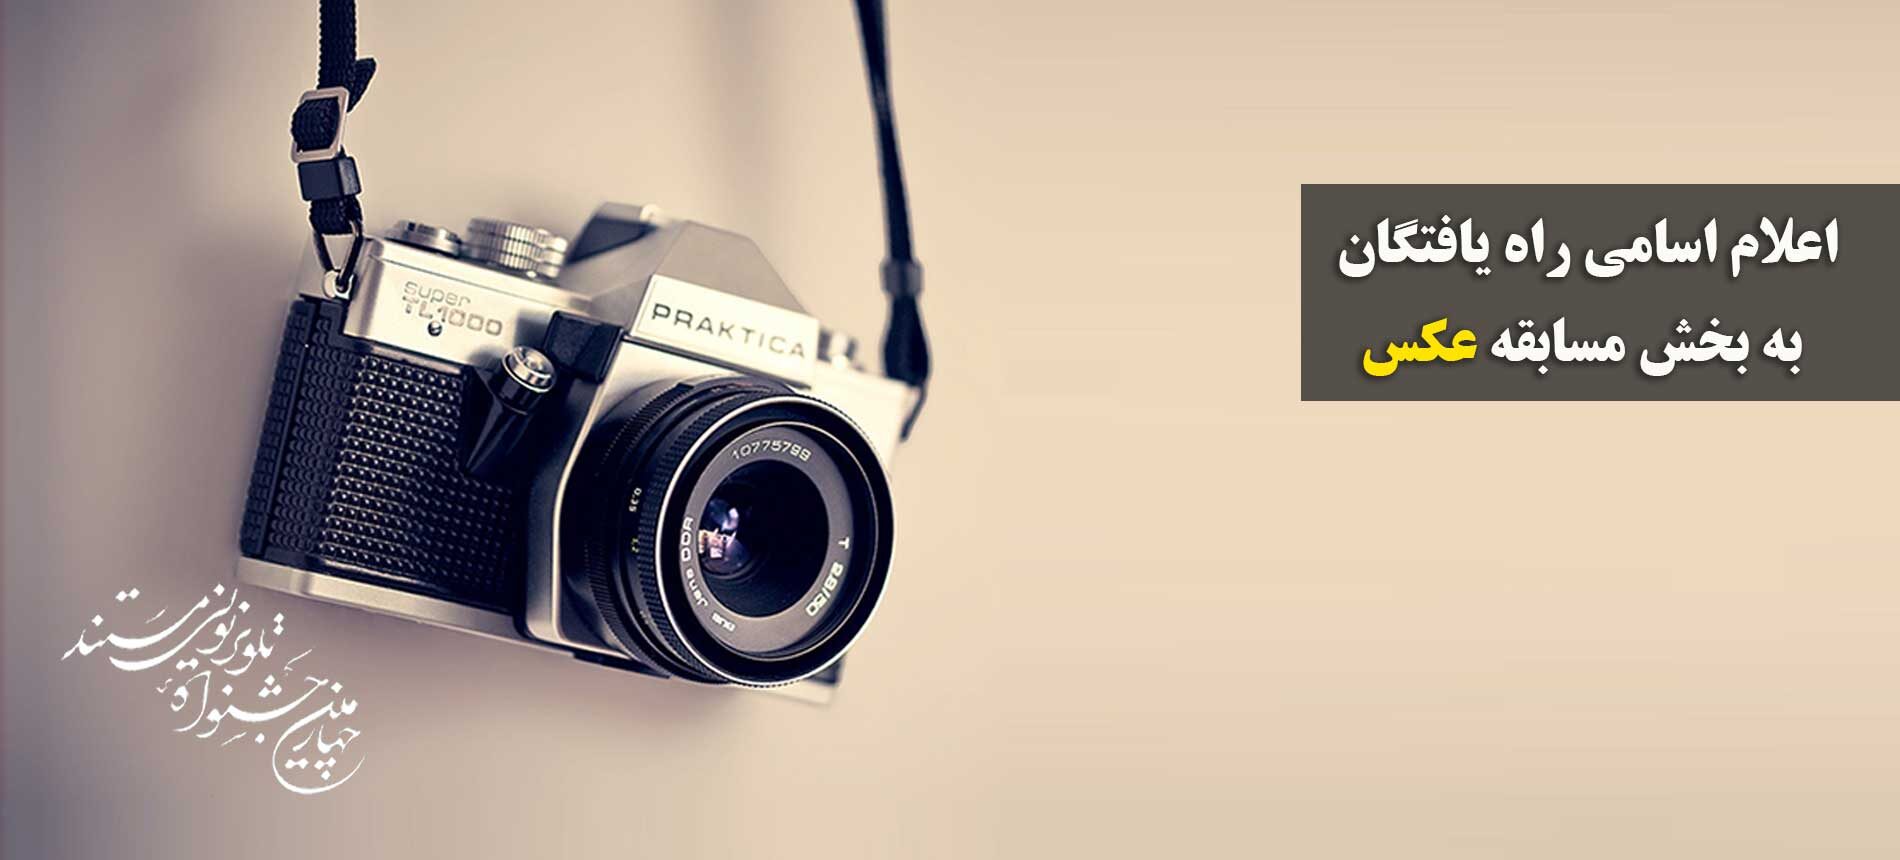 اعلام اسامی راه یافتگان به بخش مسابقه عکس چهارمین جشنواره تلویزیونی مستند